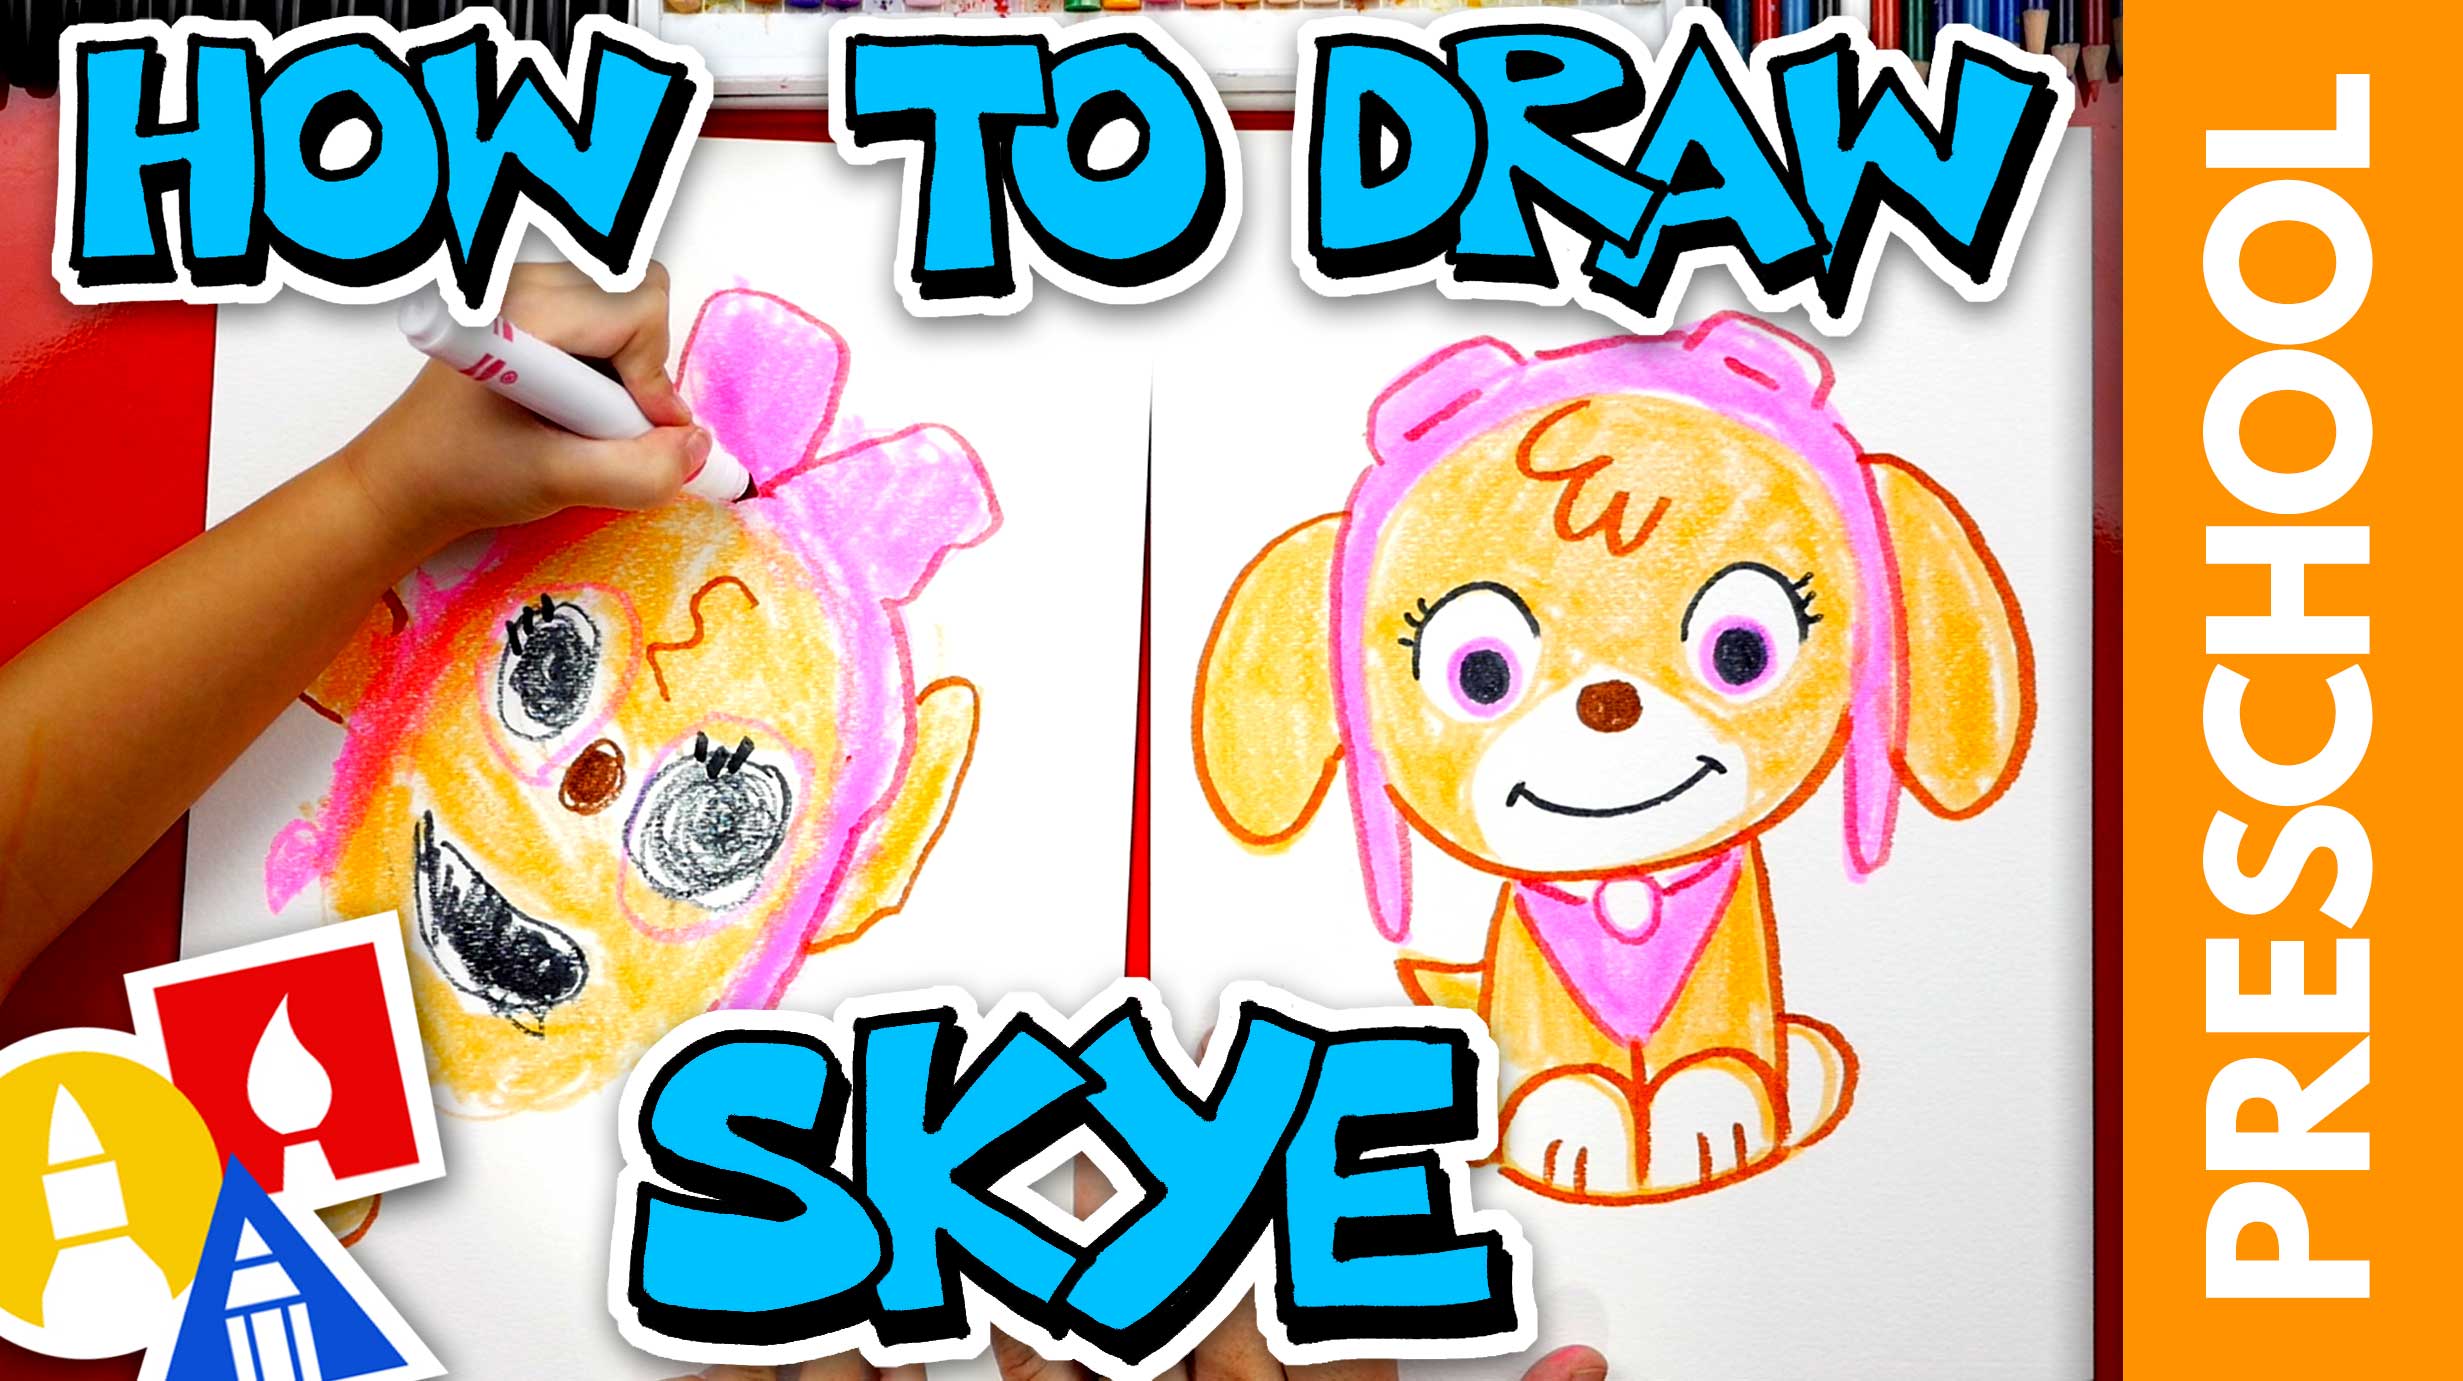 How To Draw Skye From Paw Patrol Preschool Art For Kids Hub